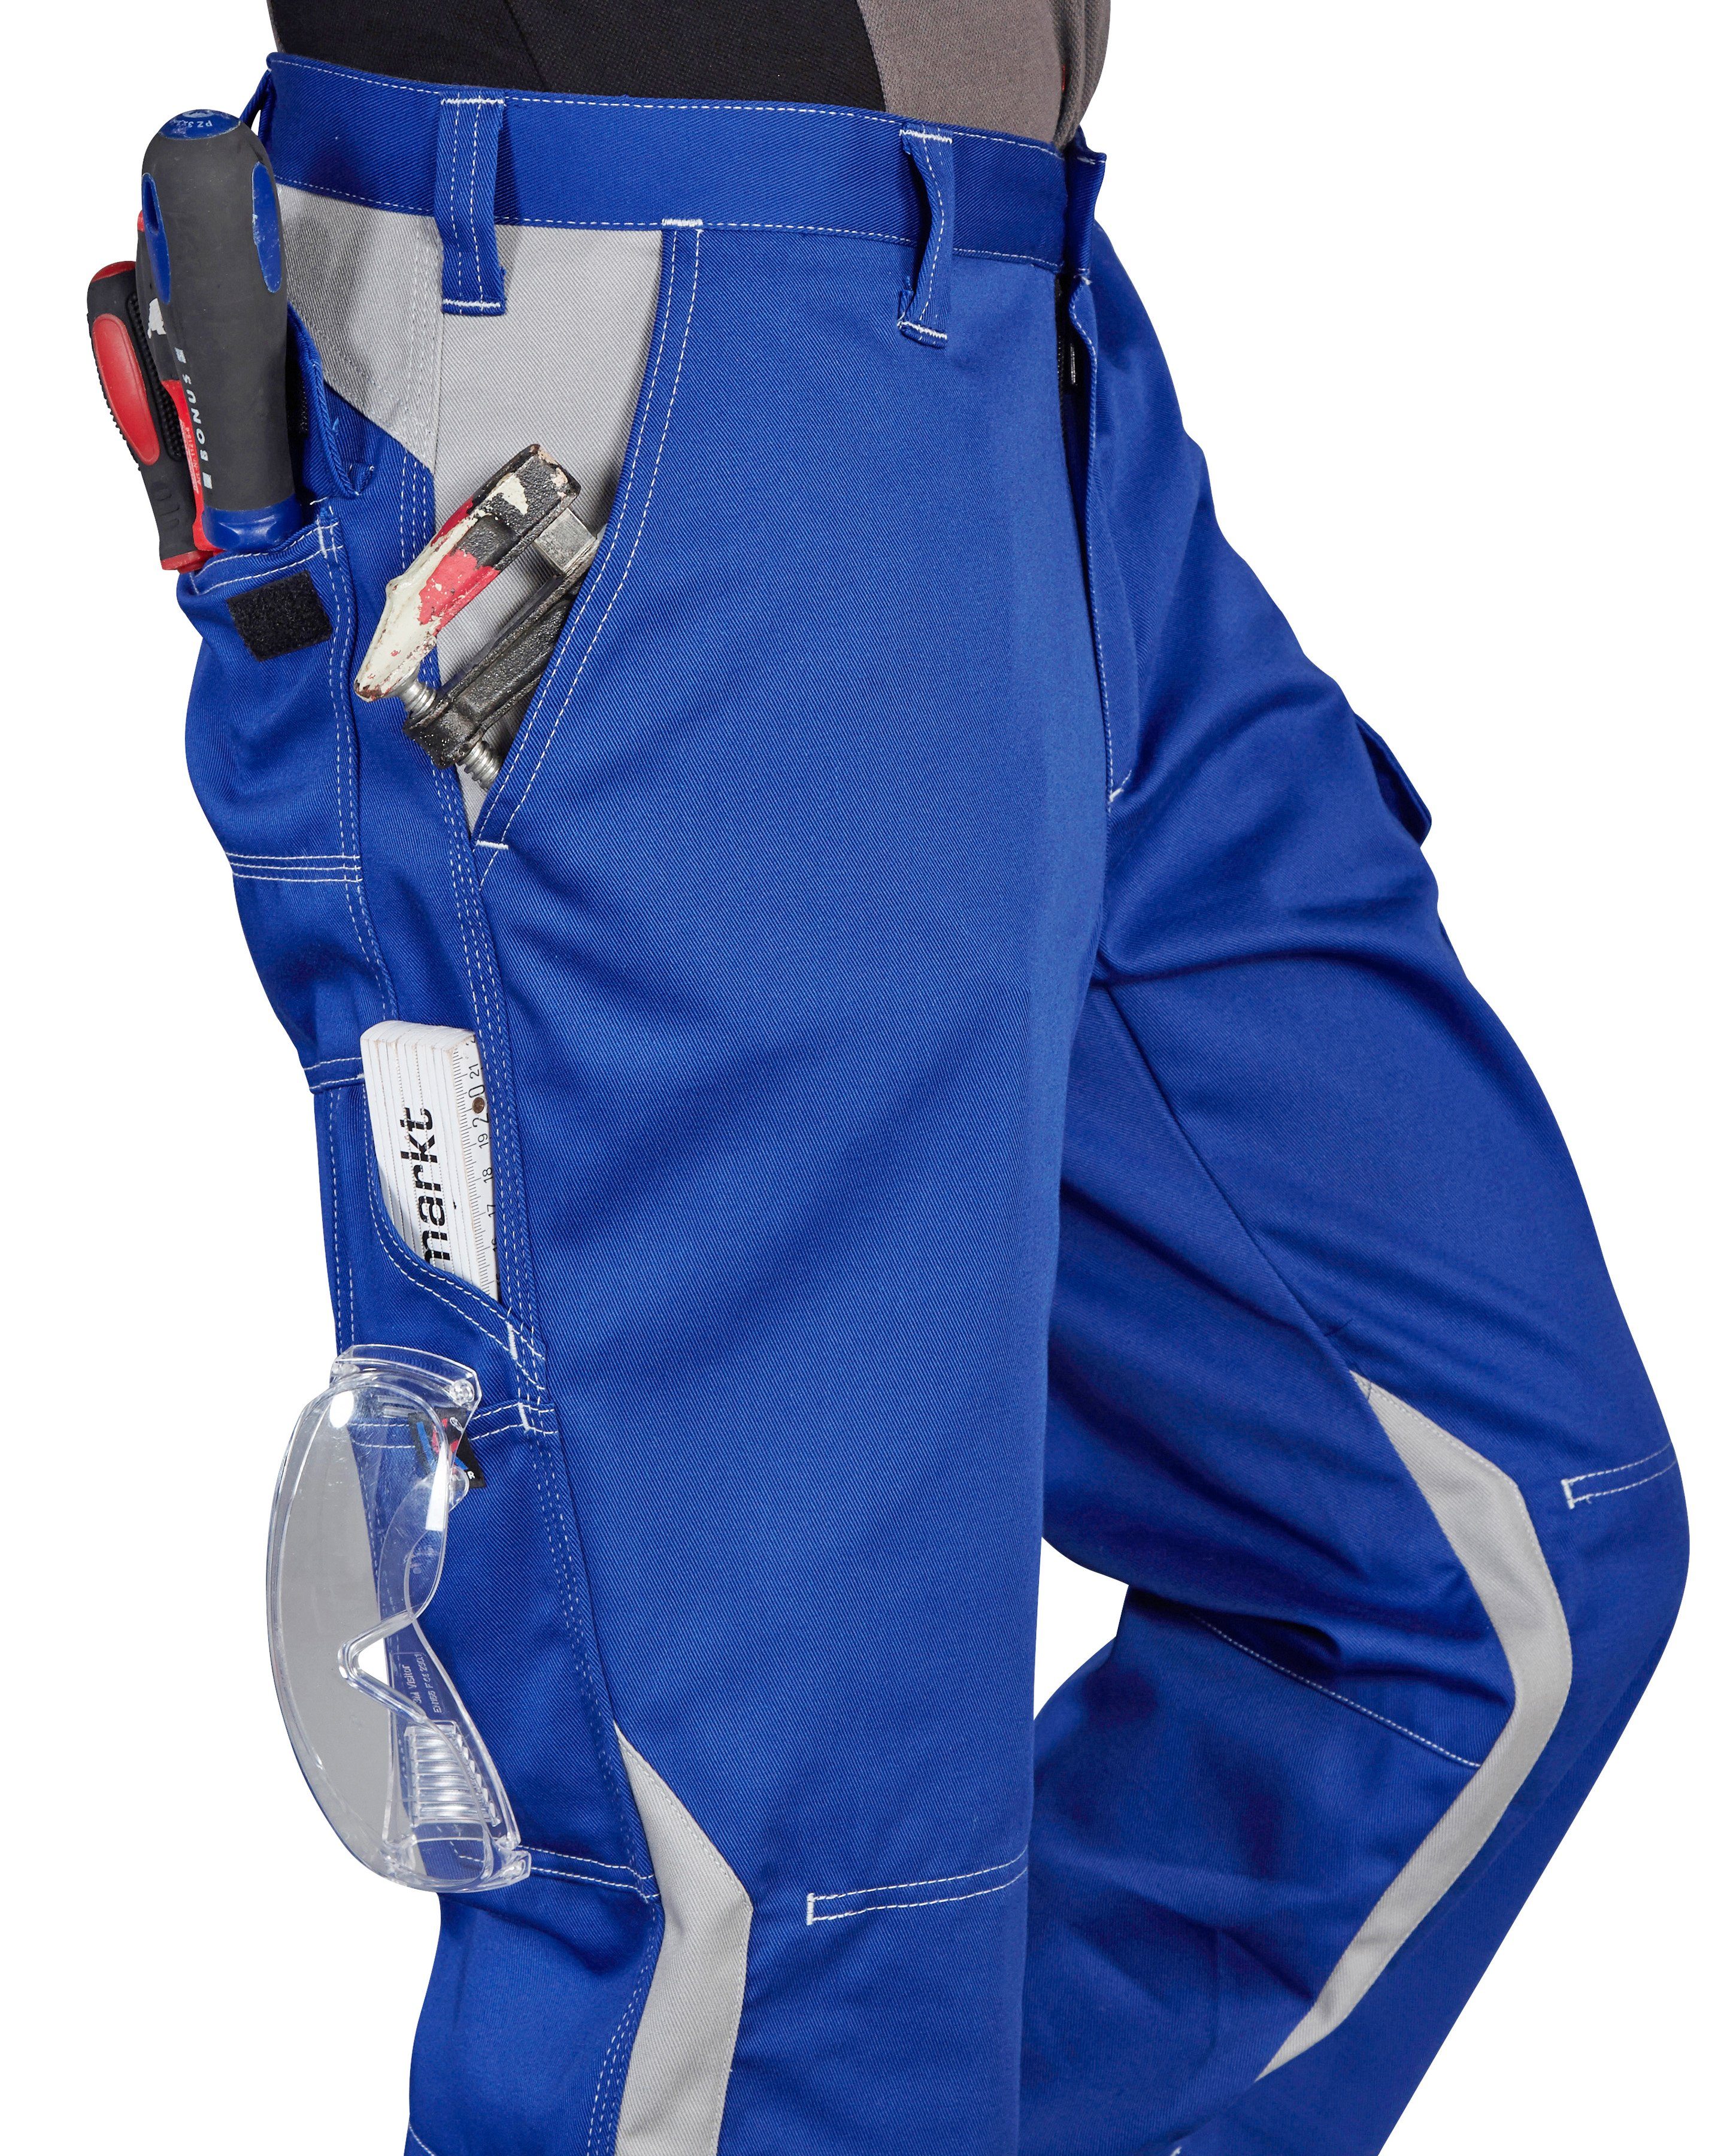 Arbeitshose blau-grau mit Kübler Kniepolstertaschen